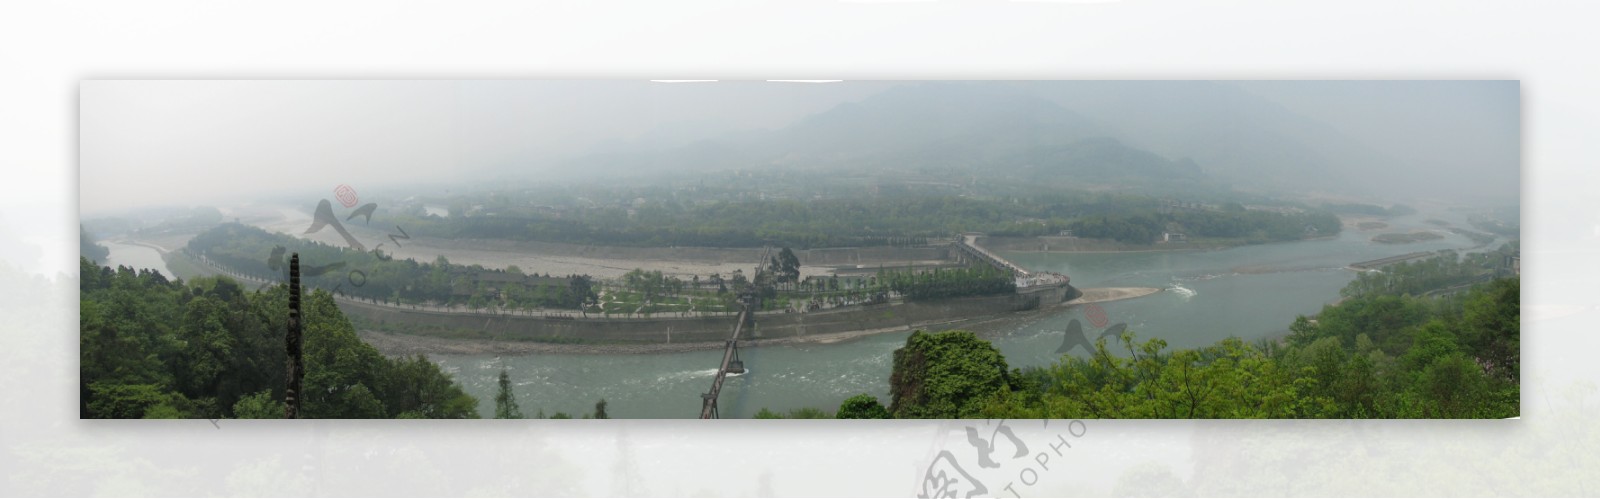 都江堰全景图片